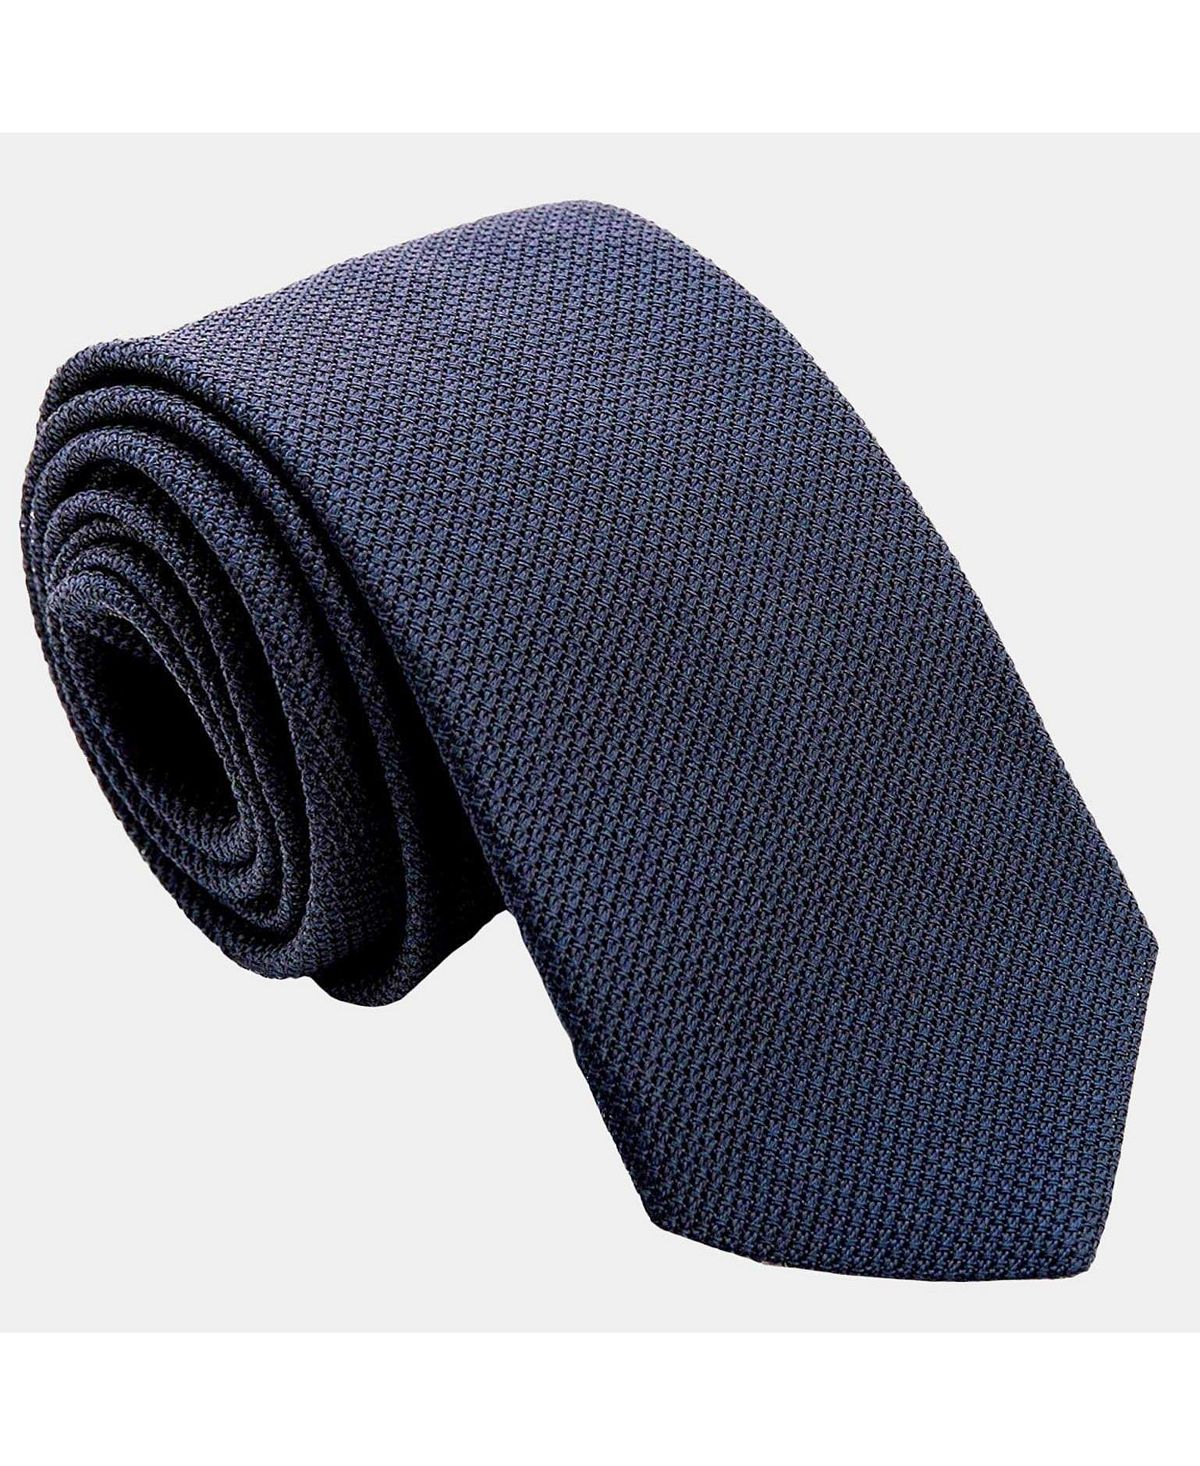 Cavour — удлиненный шелковый галстук с гренадиновым узором для мужчин — темно-синий Elizabetta foresta удлиненный шелковый галстук гренадин для мужчин elizabetta